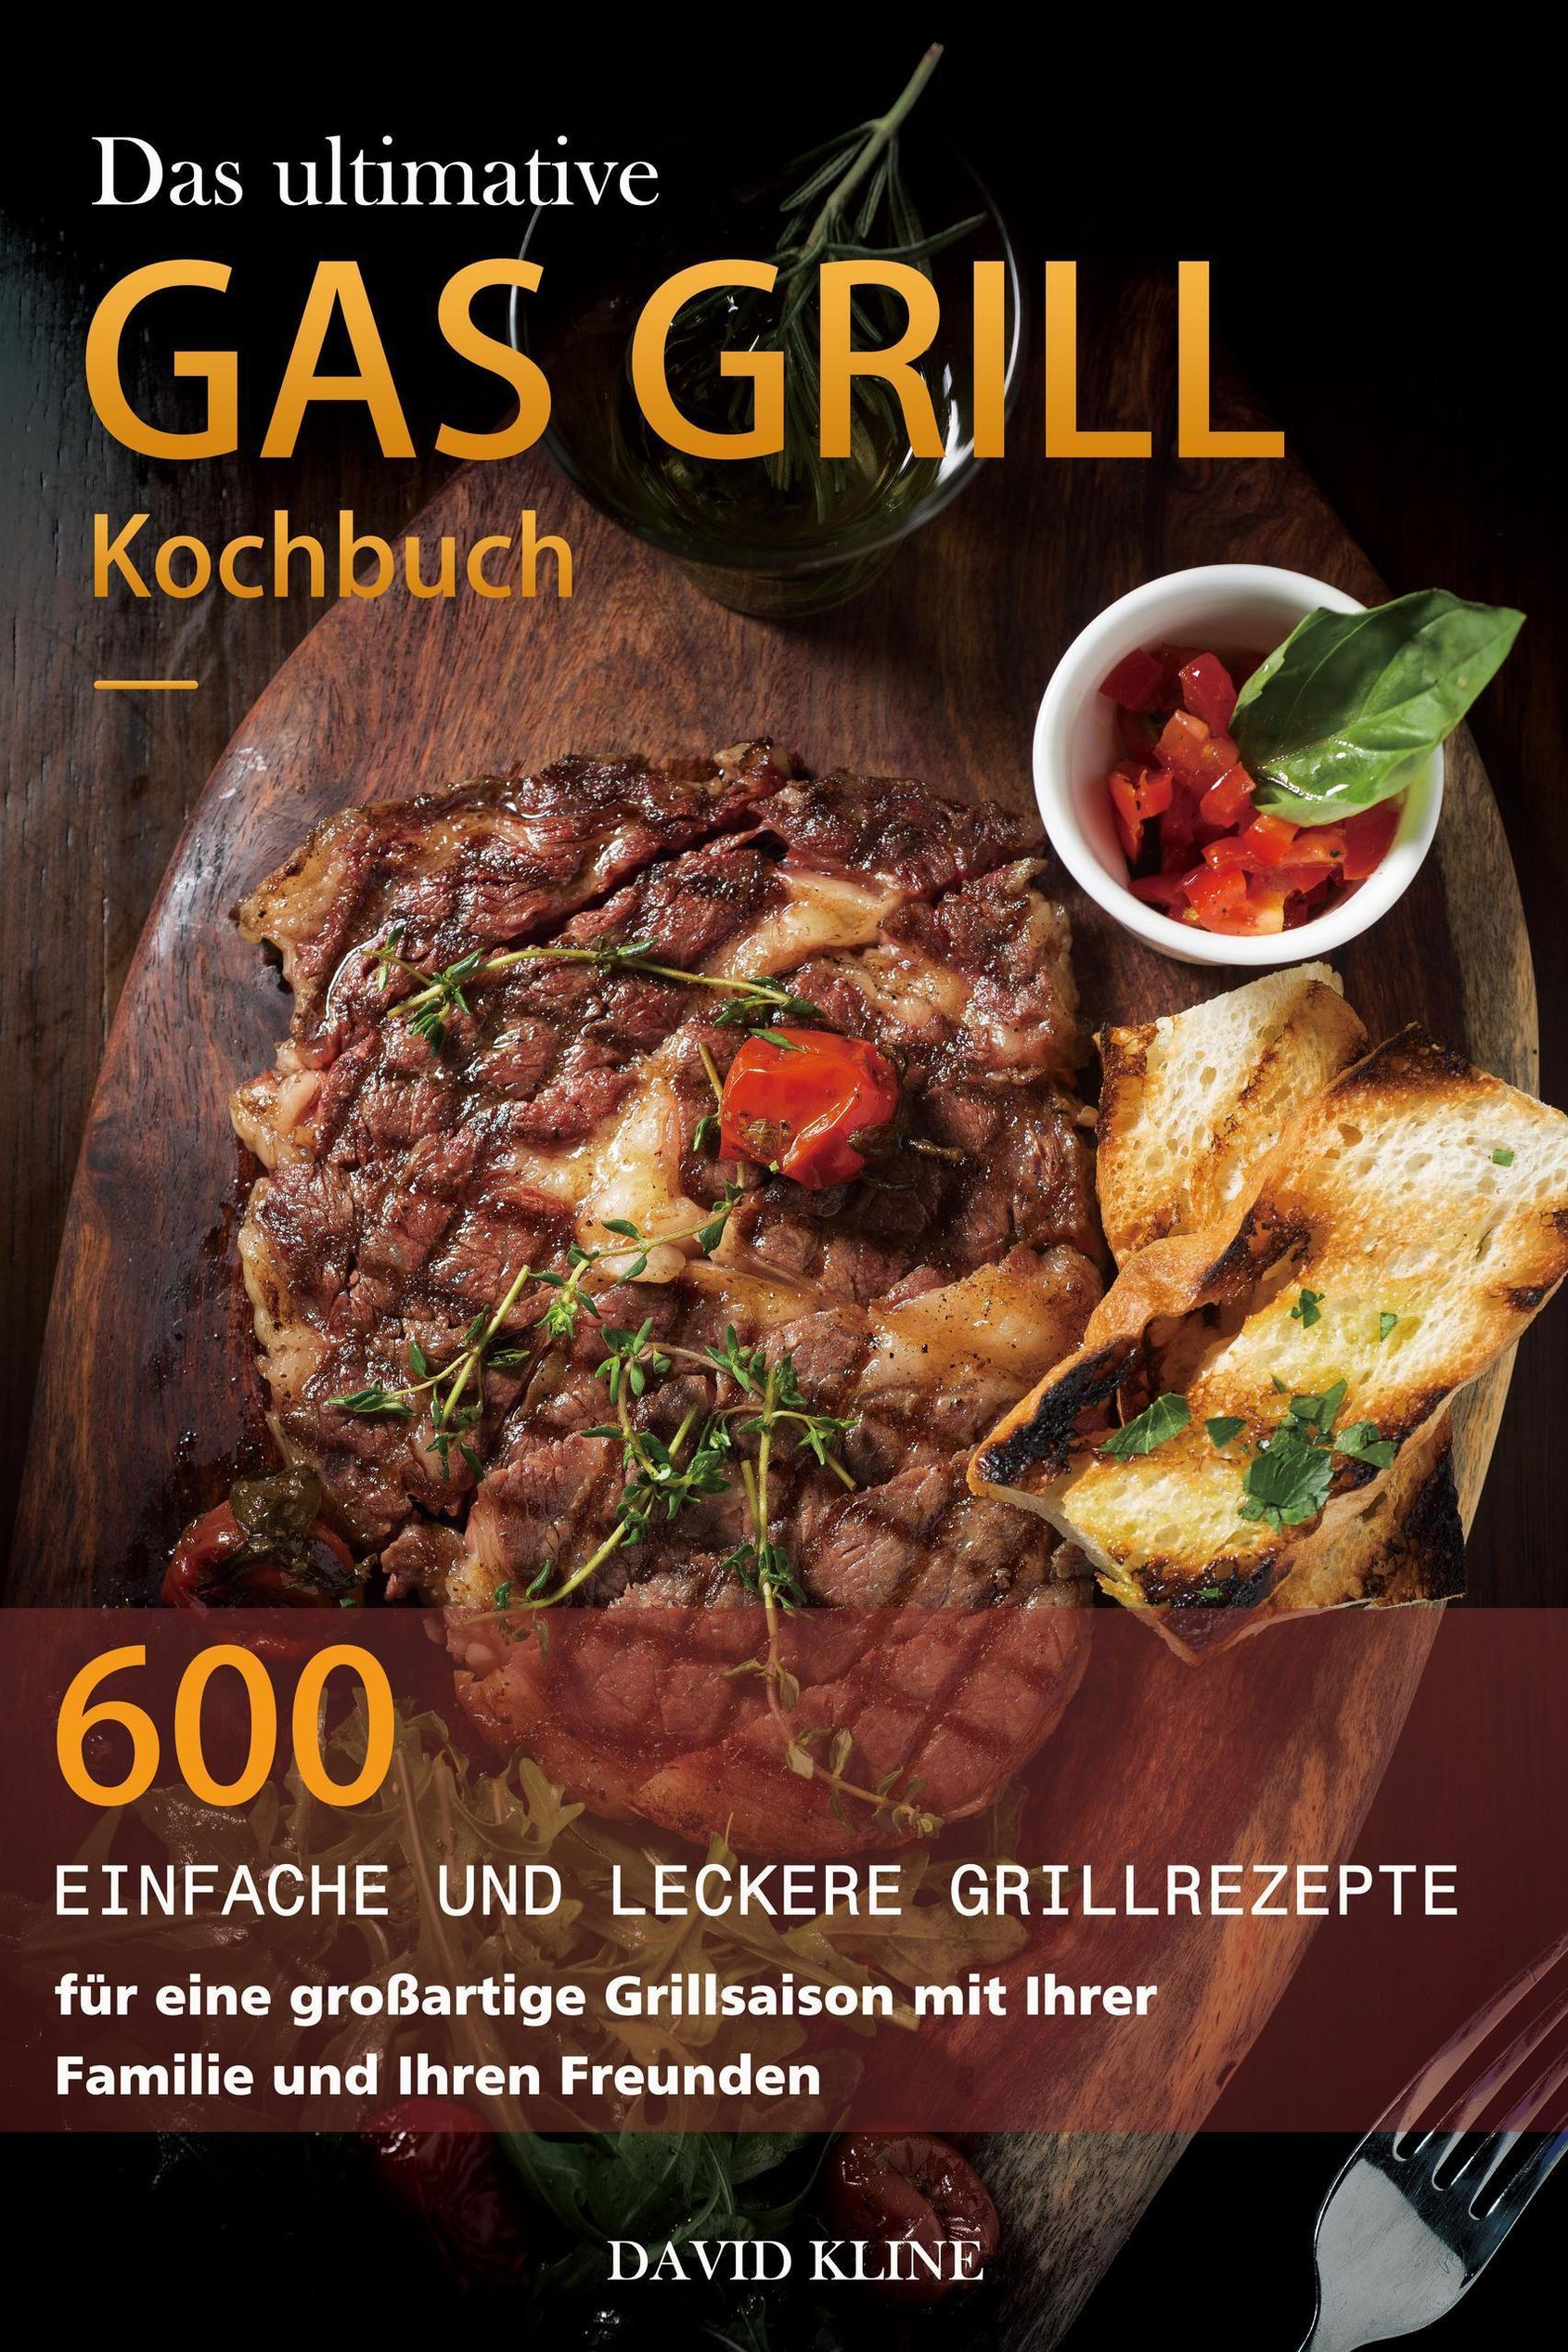 Das ultimative Gas Grill Kochbuch : 600 einfache und leckere Grillrezepte  für eine großartige Grillsaison mit Ihrer Familie und Ihren Freunden eBook  v. David Kline | Weltbild